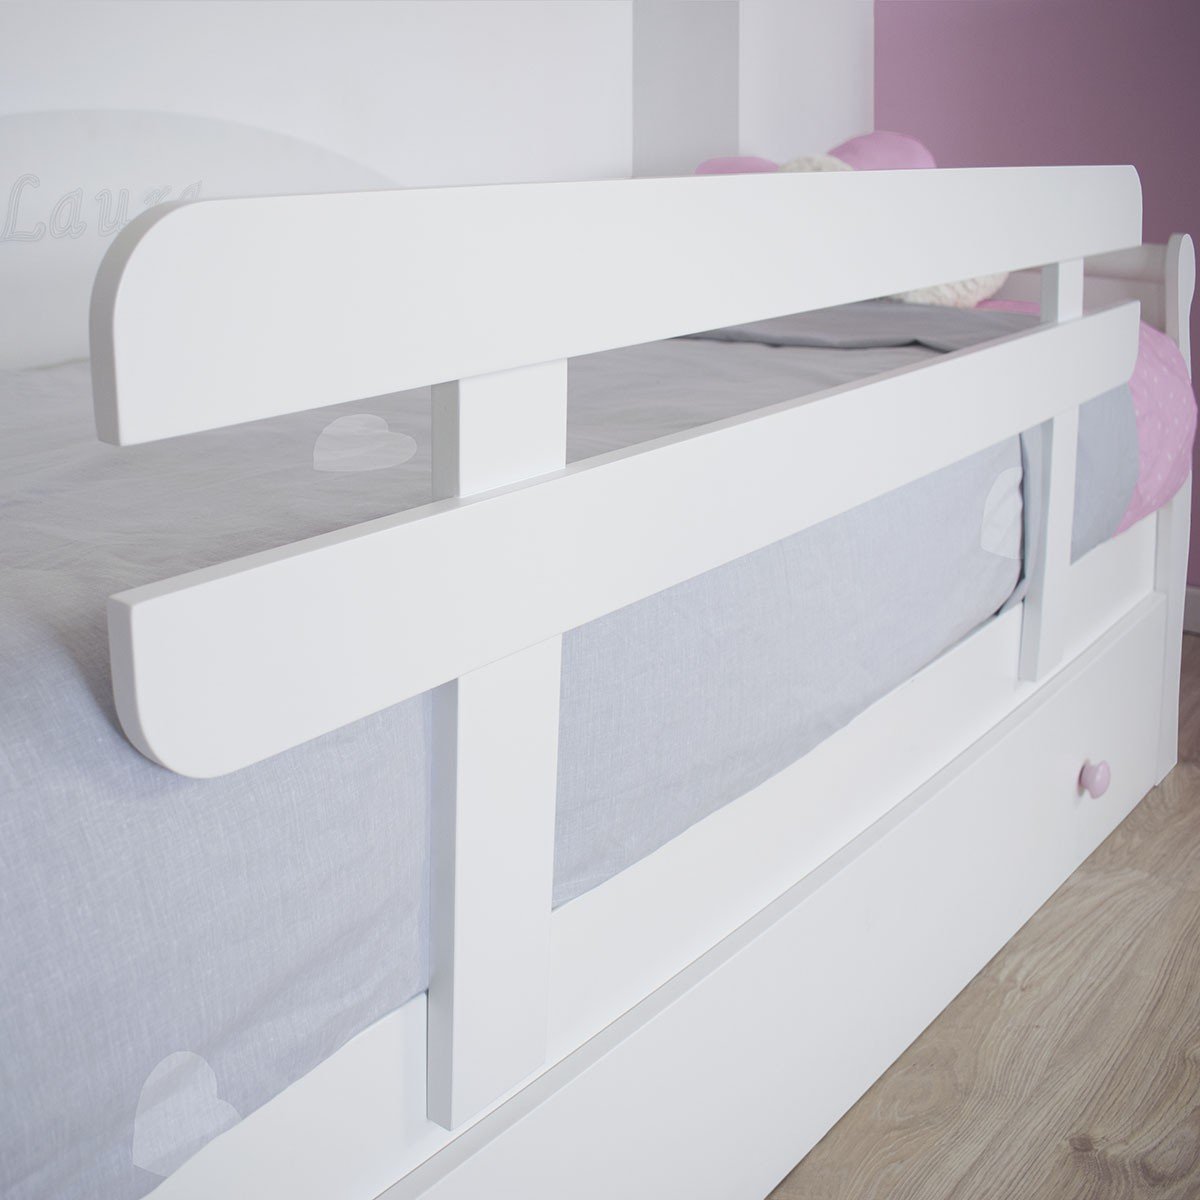 Barrera de cama de madera beige claro liso - Vertbaudet